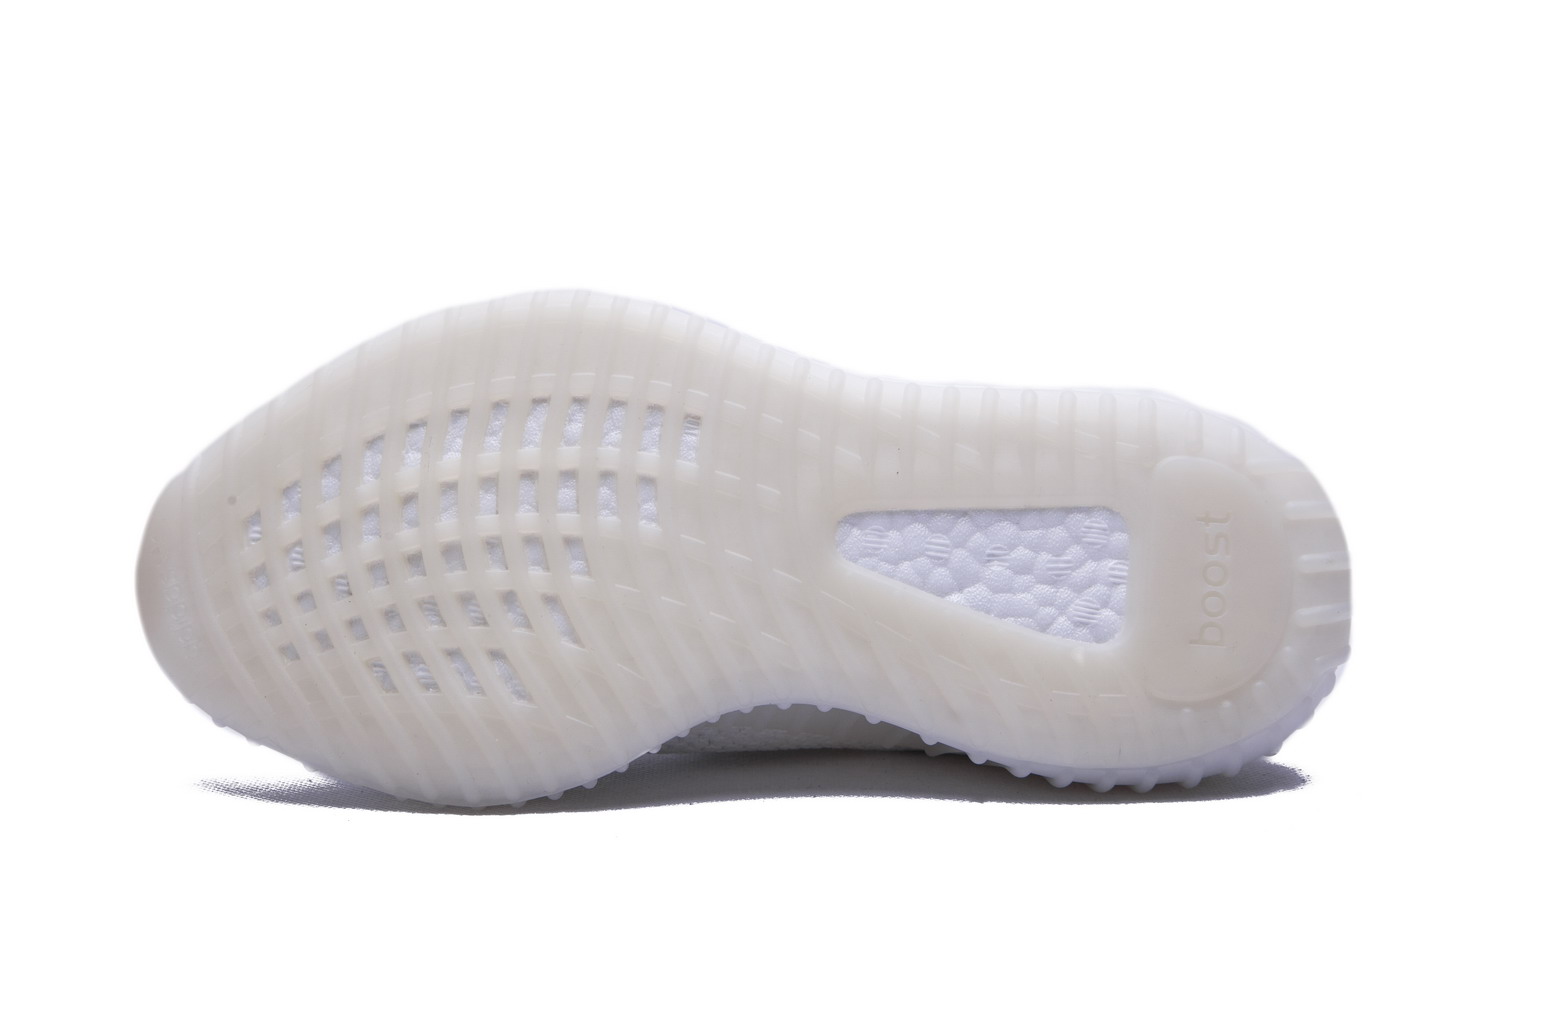 Adidas Originals Yeezy Boost 350 V2 Cream White Cp9366 15 - kickbulk.co